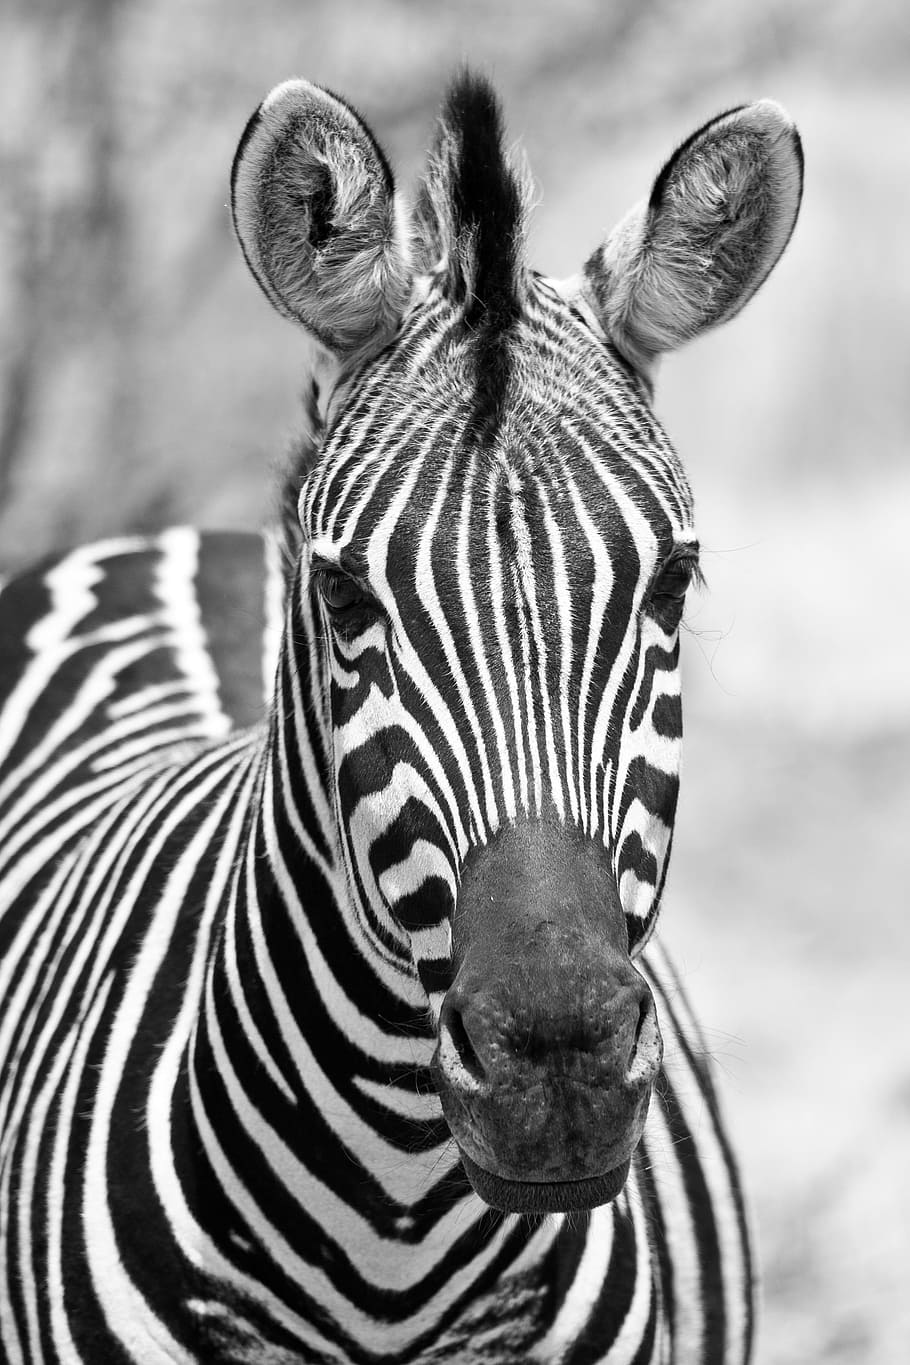 グレースケール写真 シマウマ モノクロ ブラックホワイト ピラネスバーグ国立公園 ポートレート 南アフリカ 垂直 野生動物 動物野生 動物 Pxfuel